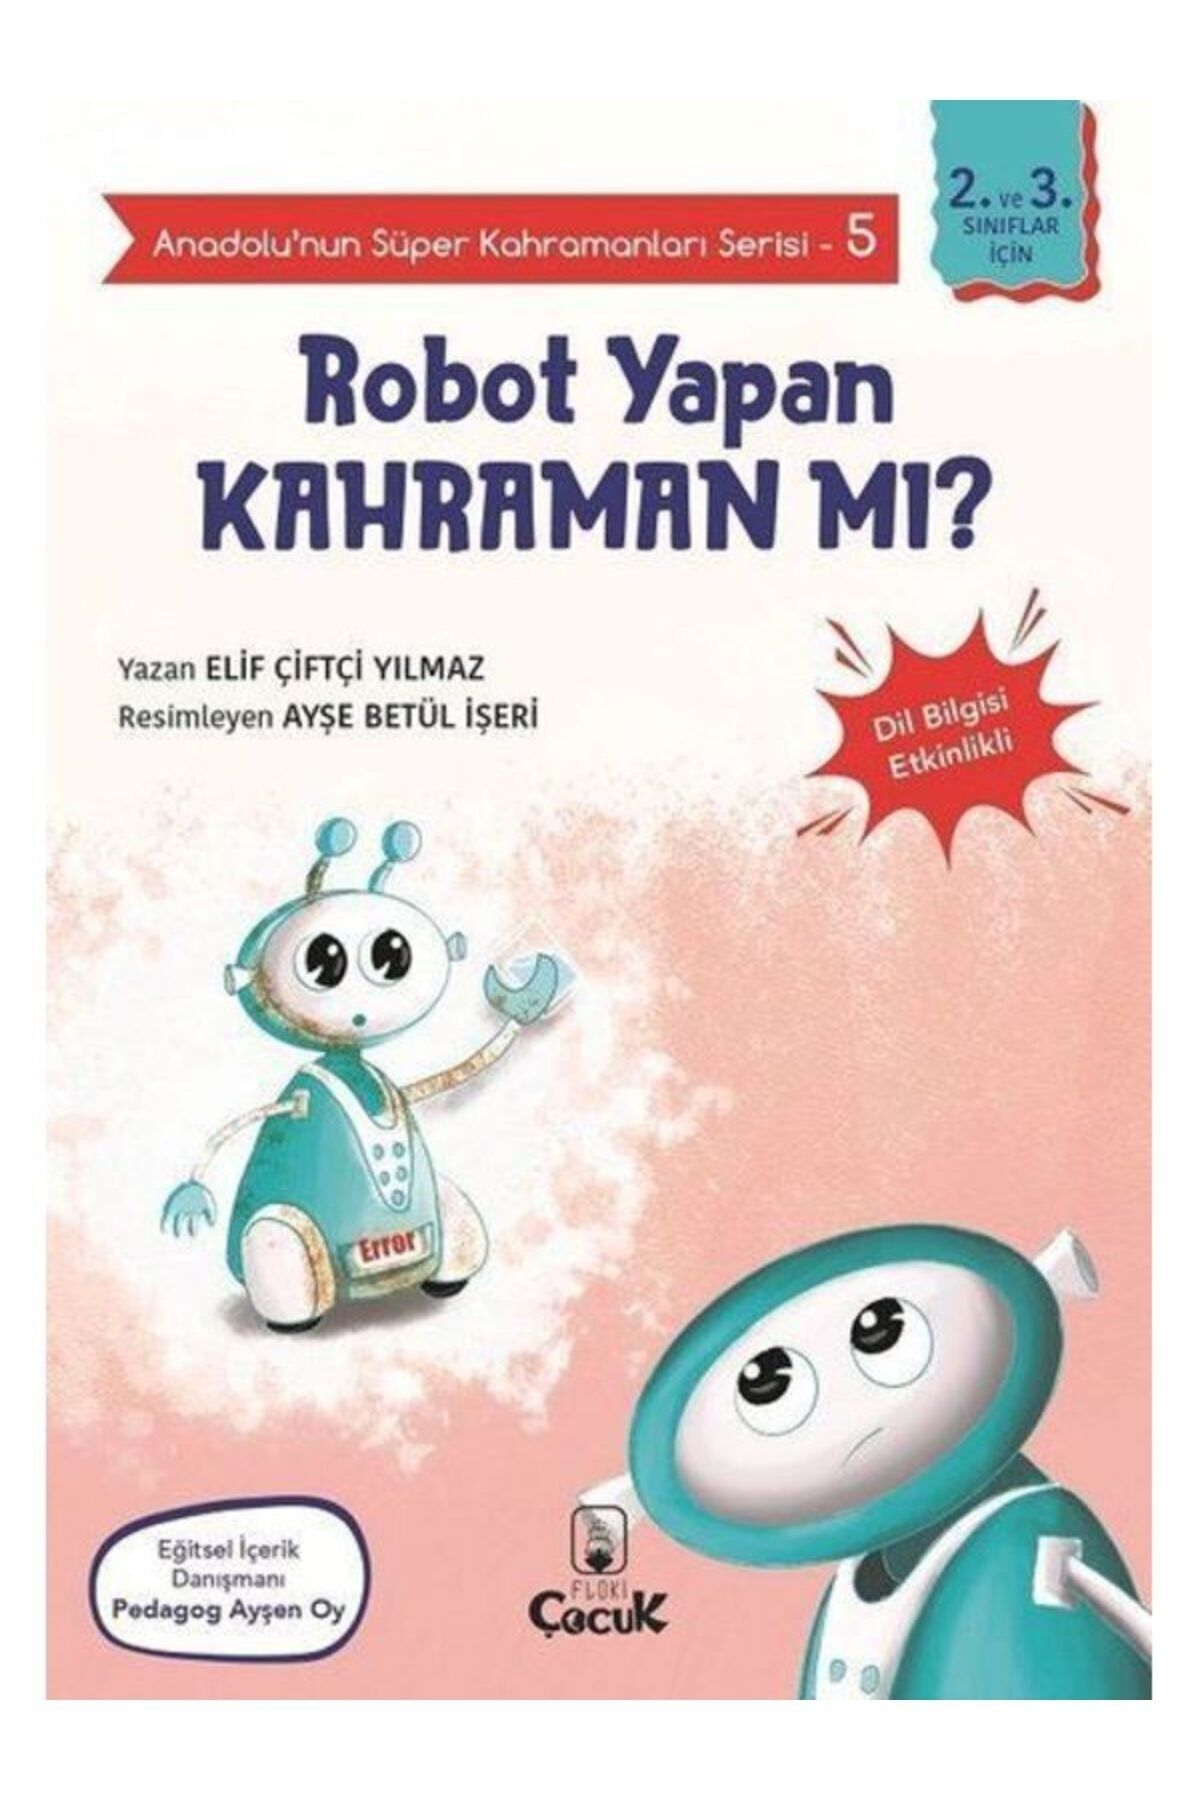 FLOKİ ÇOCUK Robot Yapan Kahraman Mı? Anadolu’nun Süper Kahramanları Serisi 5 Dil Bilgisi Etkinlikli Elif Çi